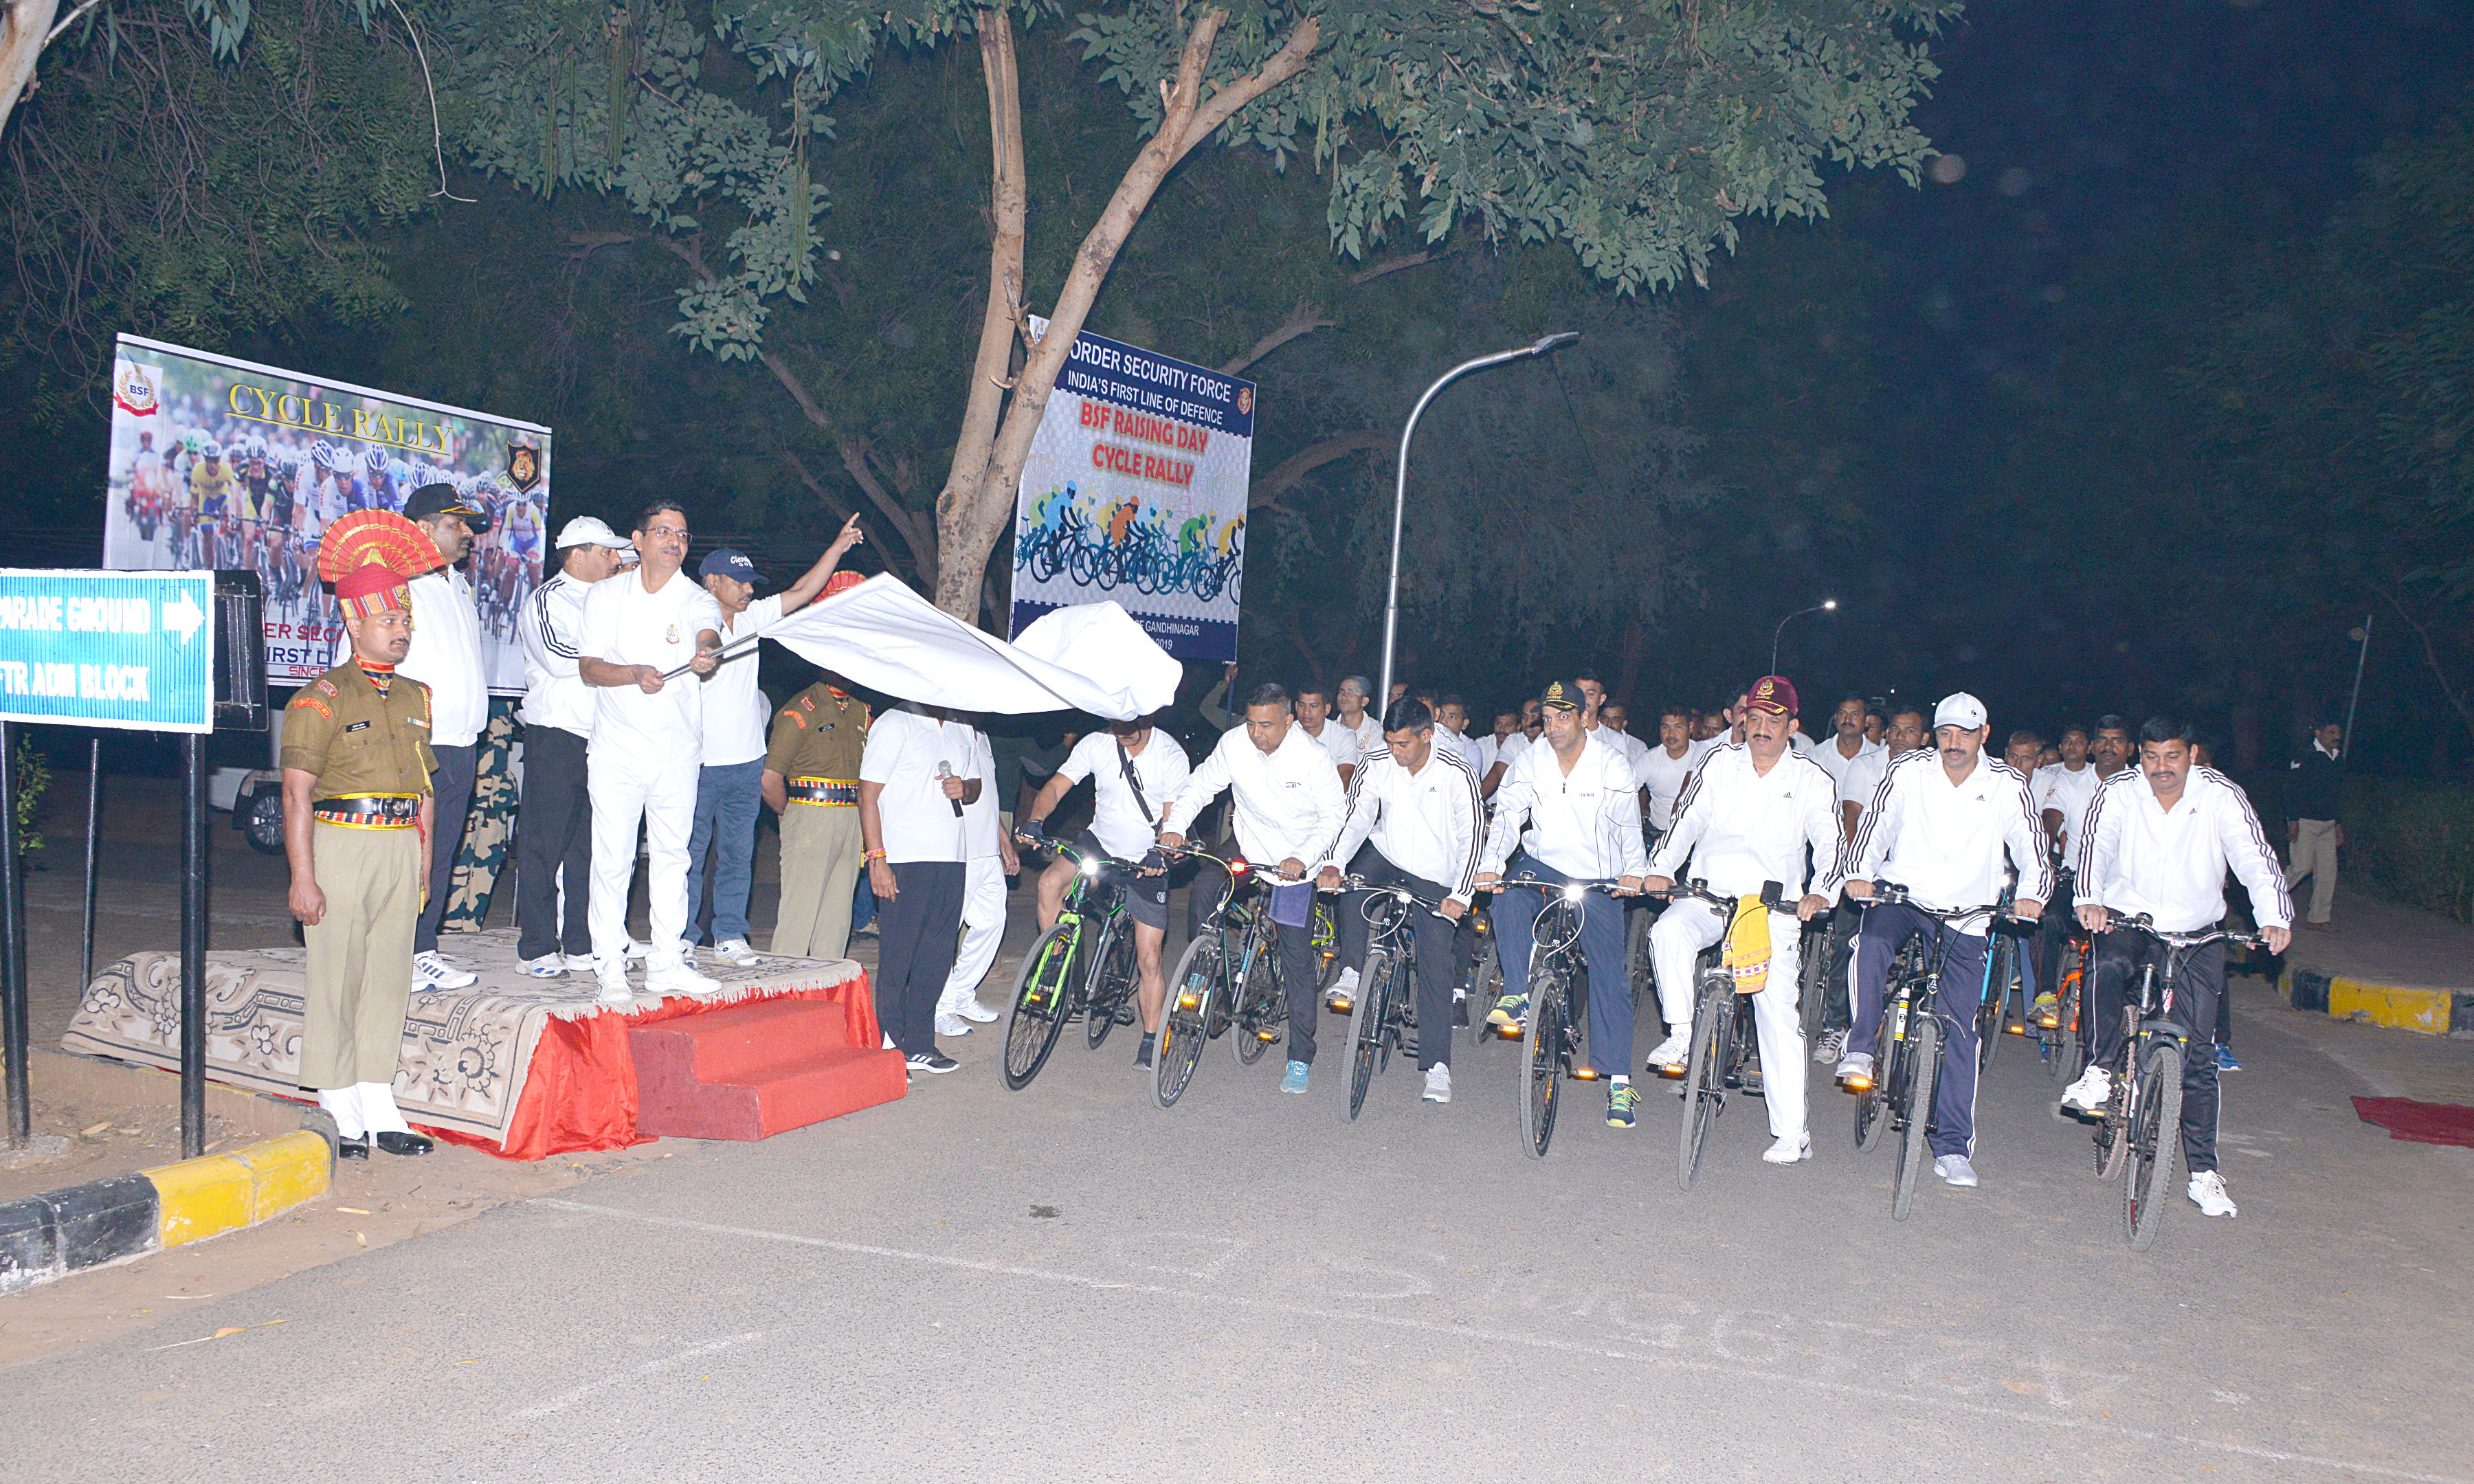 BSF raising day: बाइक रैली में जुड़े अधिकारी, जवान, स्थापना दिवस पर विभिन्न कार्यक्रम